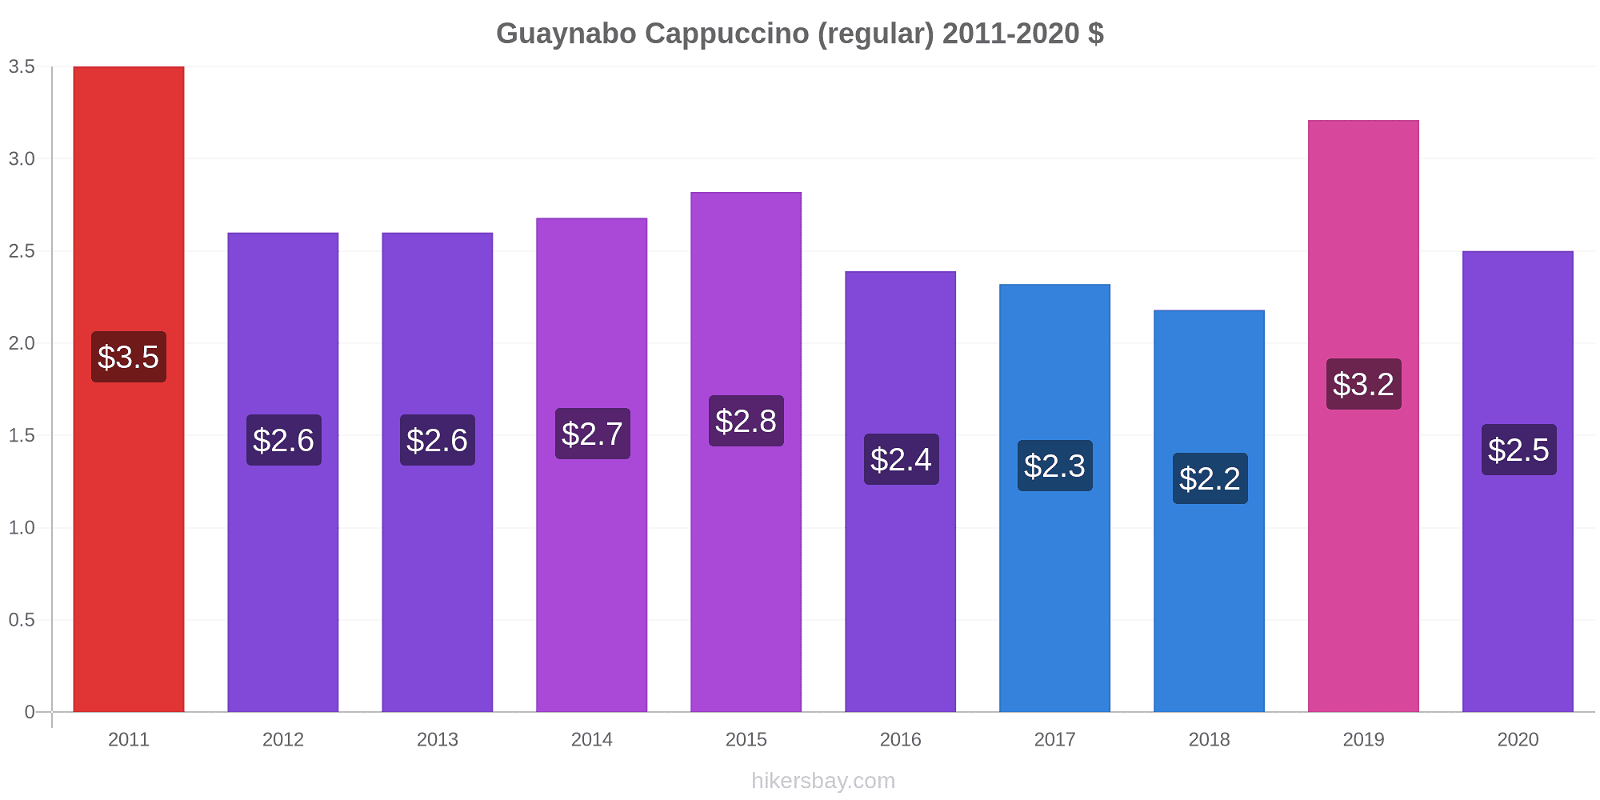 Guaynabo variação de preço Capuccino (regular) hikersbay.com